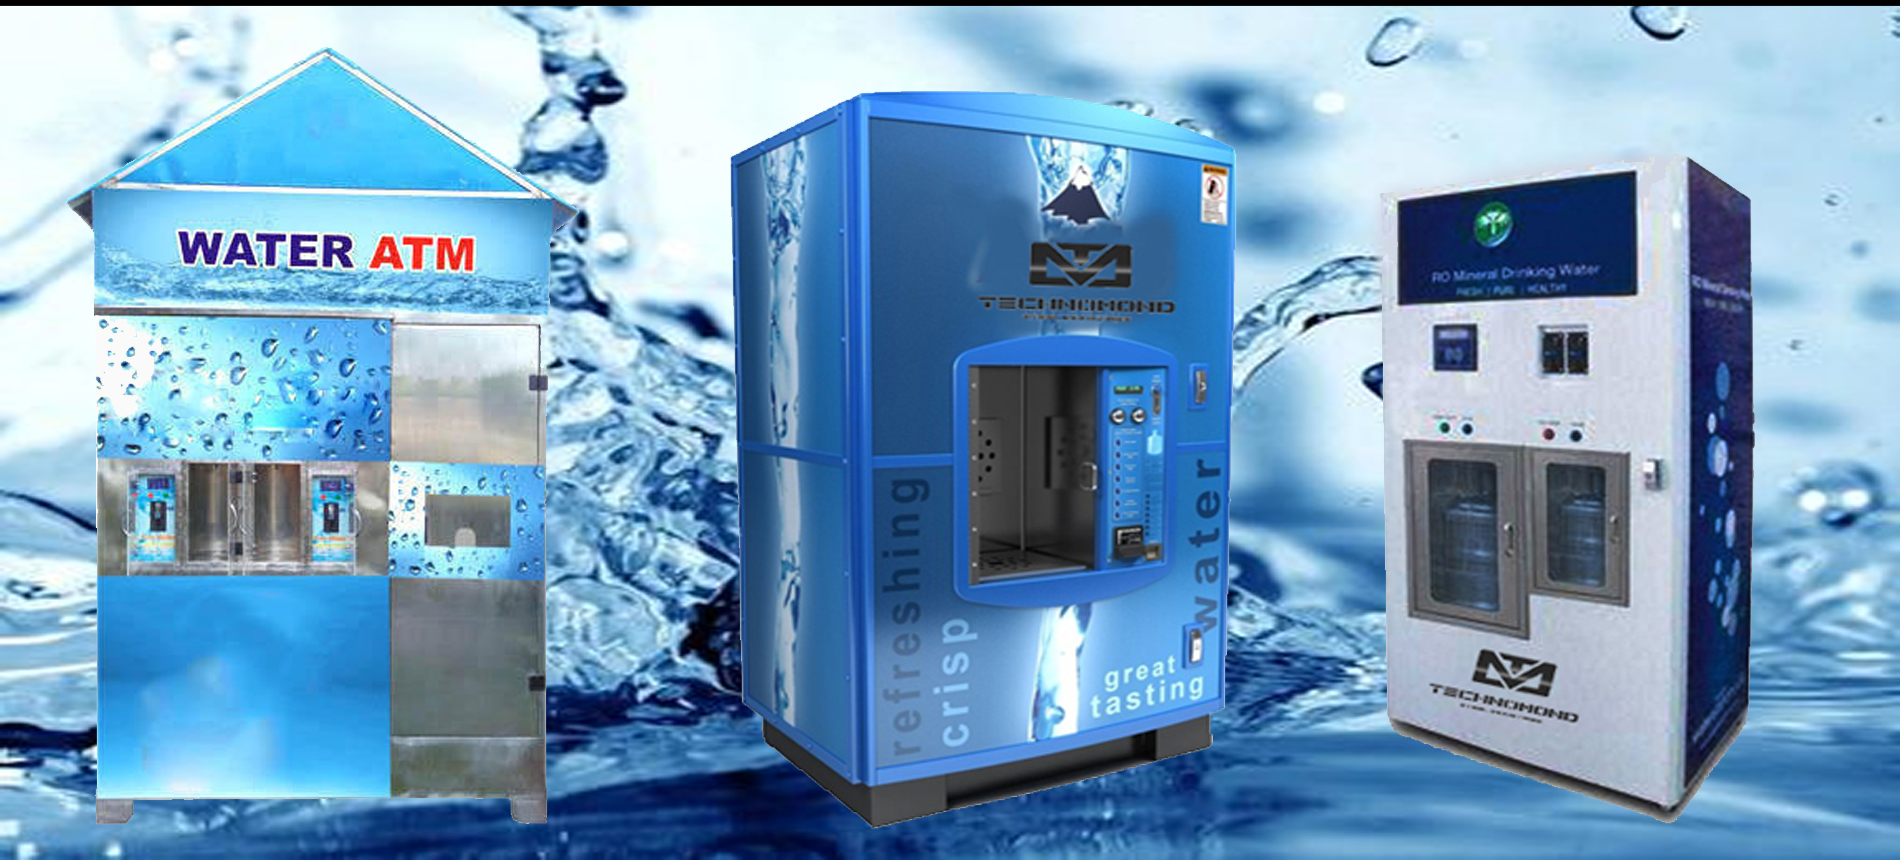 Water ATM gaining popularity in Kathmandu Valley